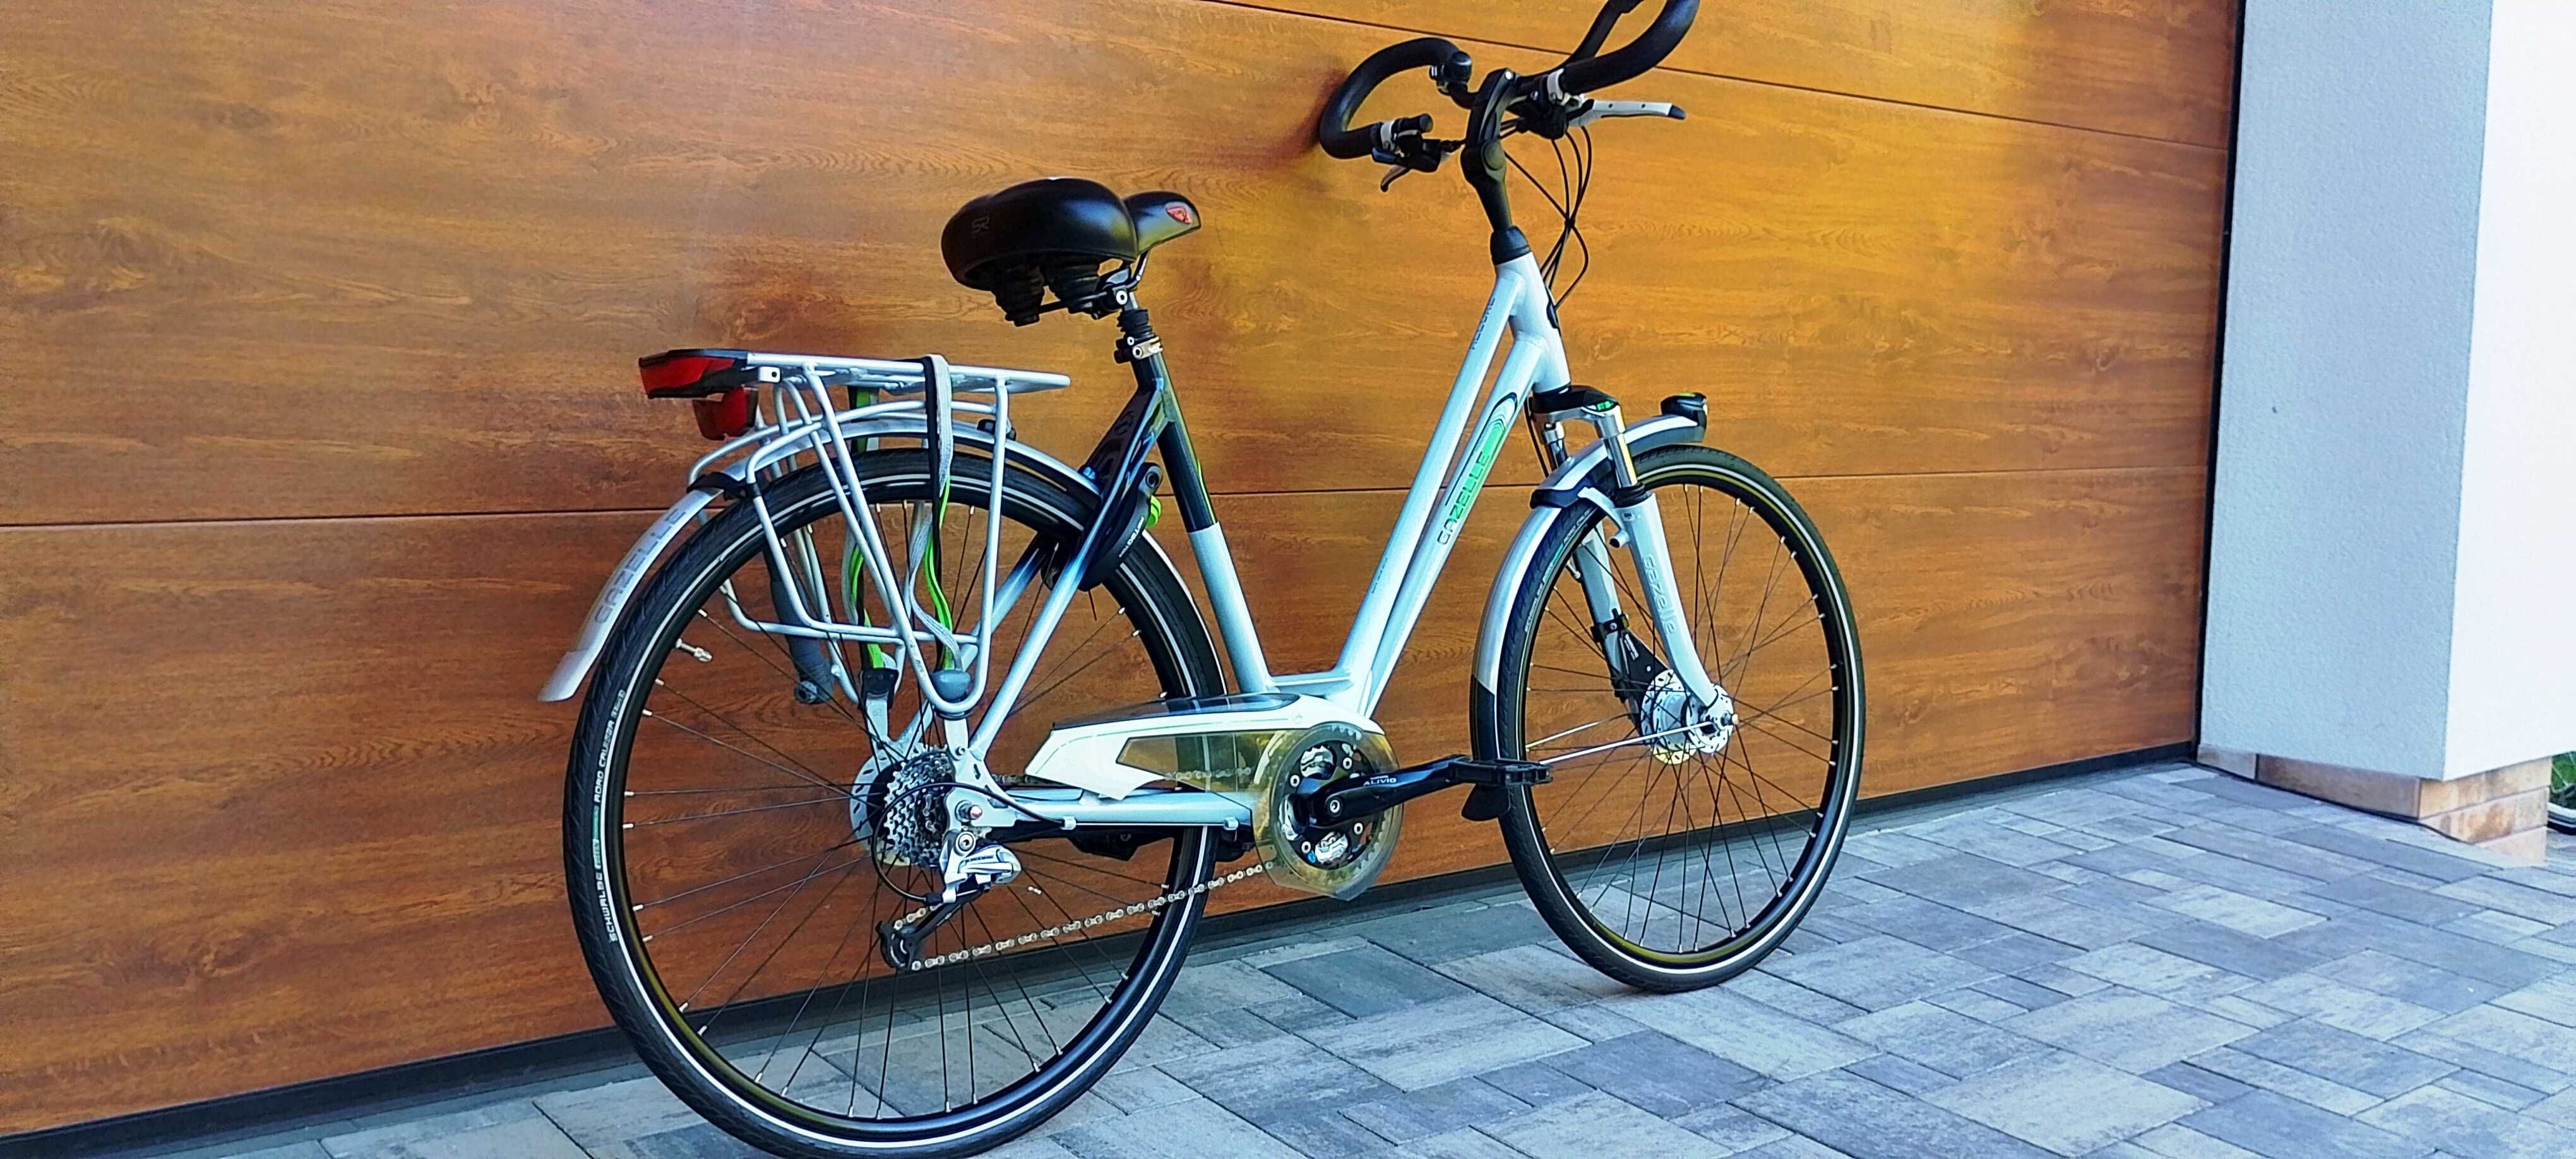 rower holenderski Gazelle Allure perfekcyjny stan igła jak nowa